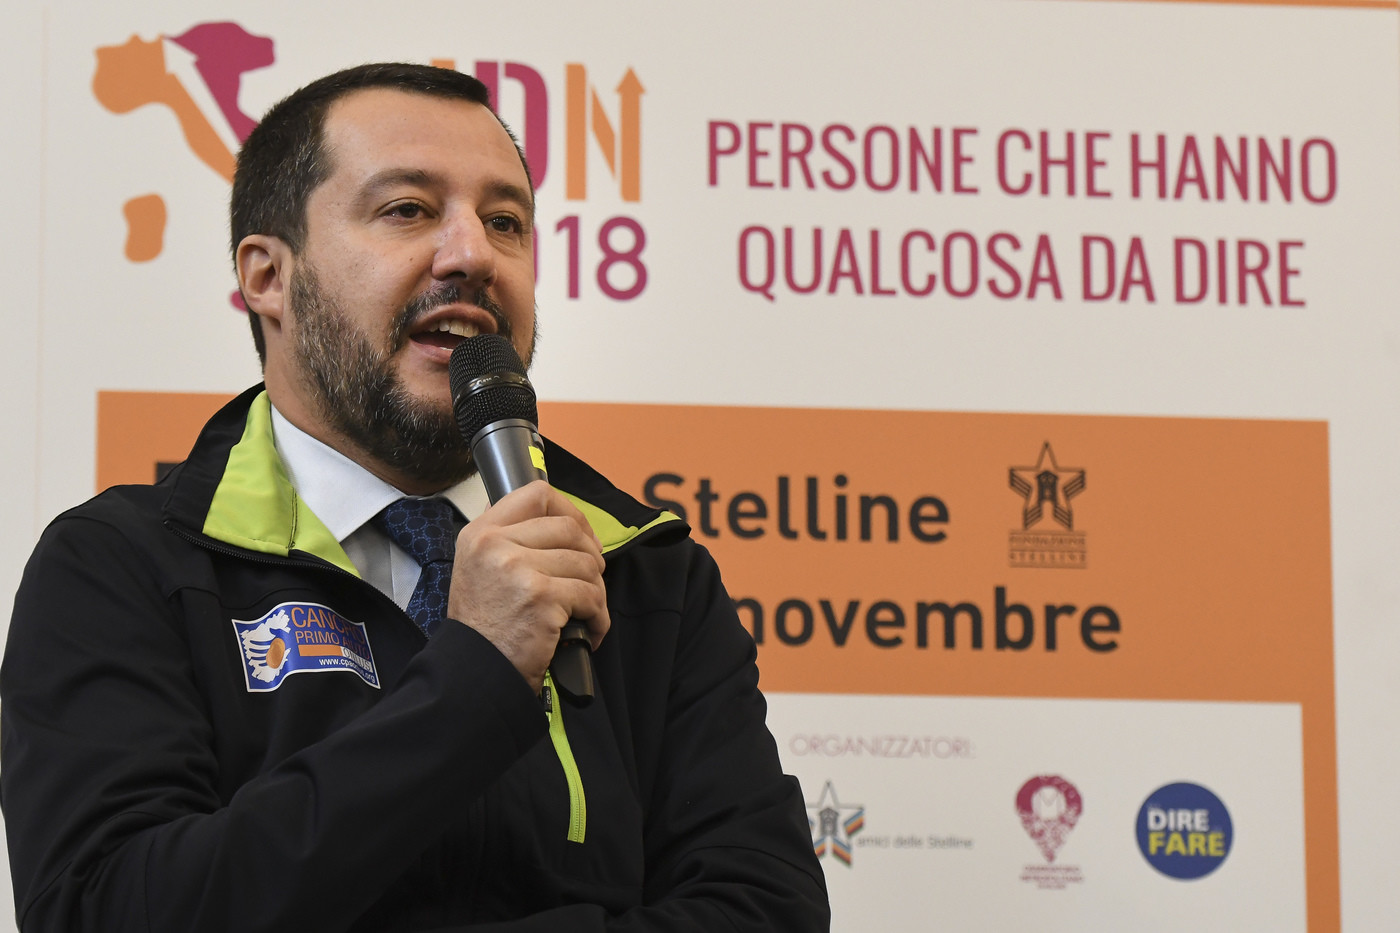 Governo, Salvini: “Se non mi fanno saltare, vado fino in fondo”